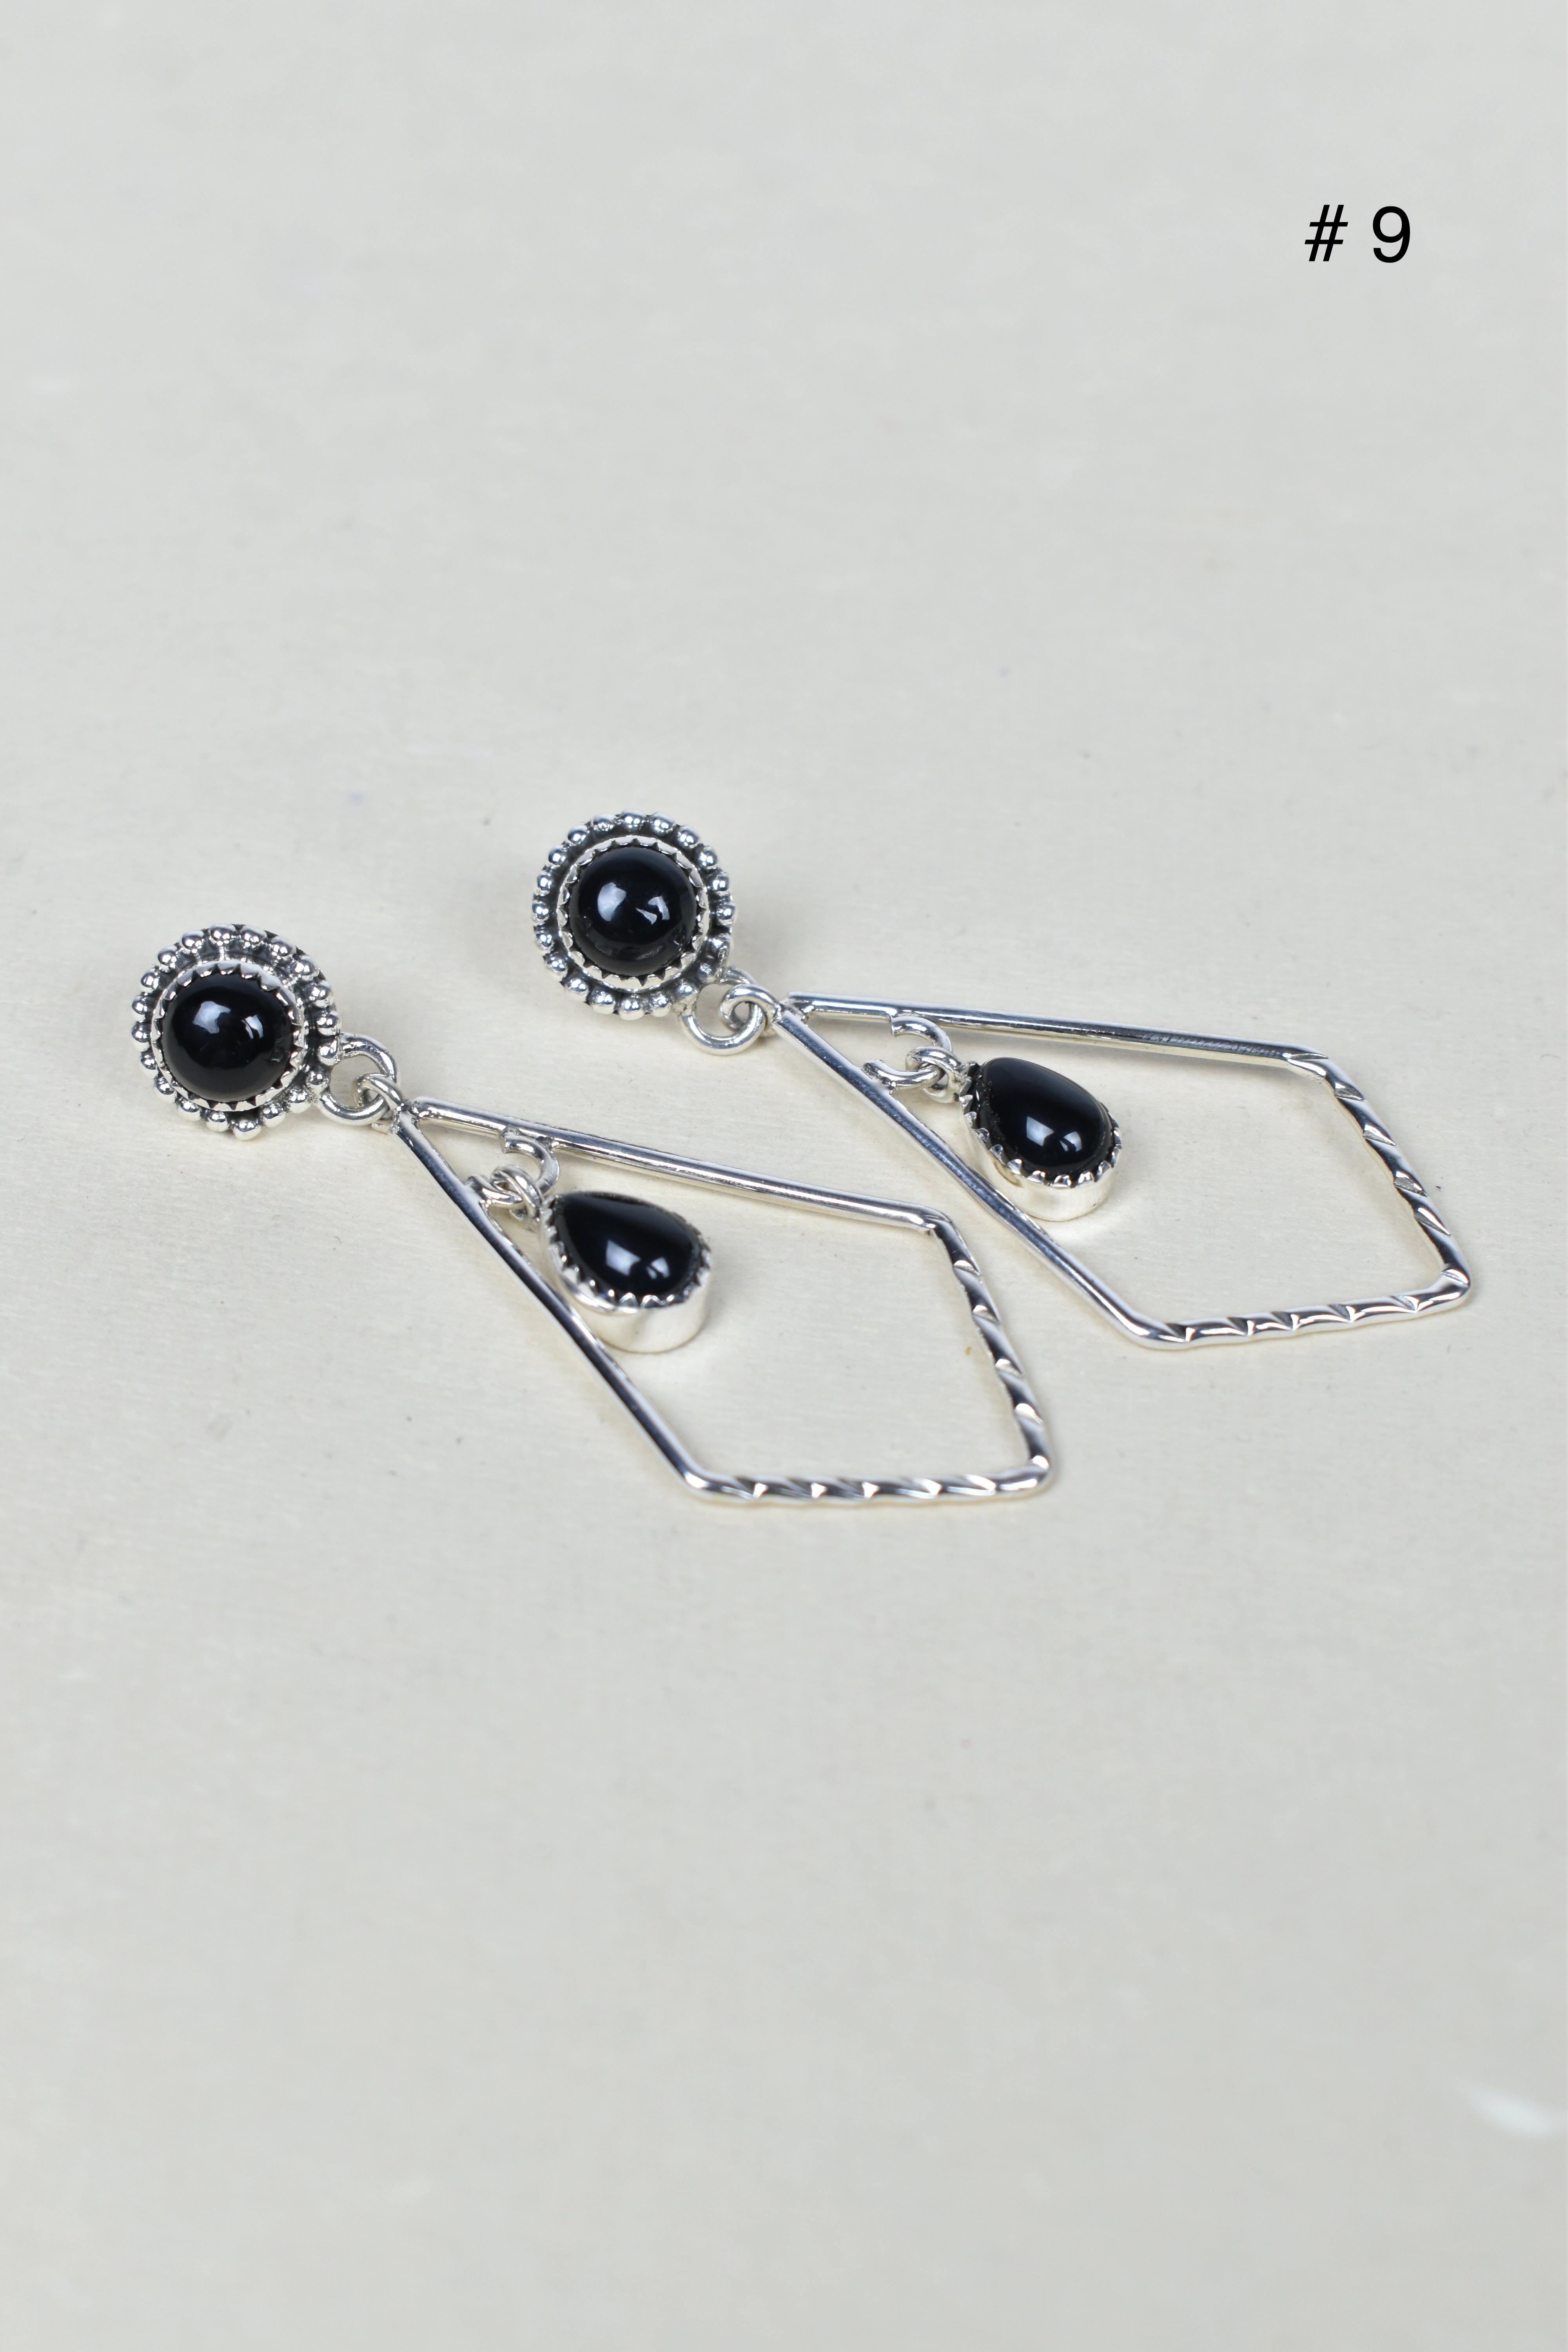 Skyborne Celestial Elegance Dangle Earrings-Earrings-Krush Kandy, Women's Online Fashion Boutique Located in Phoenix, Arizona (Scottsdale Area)